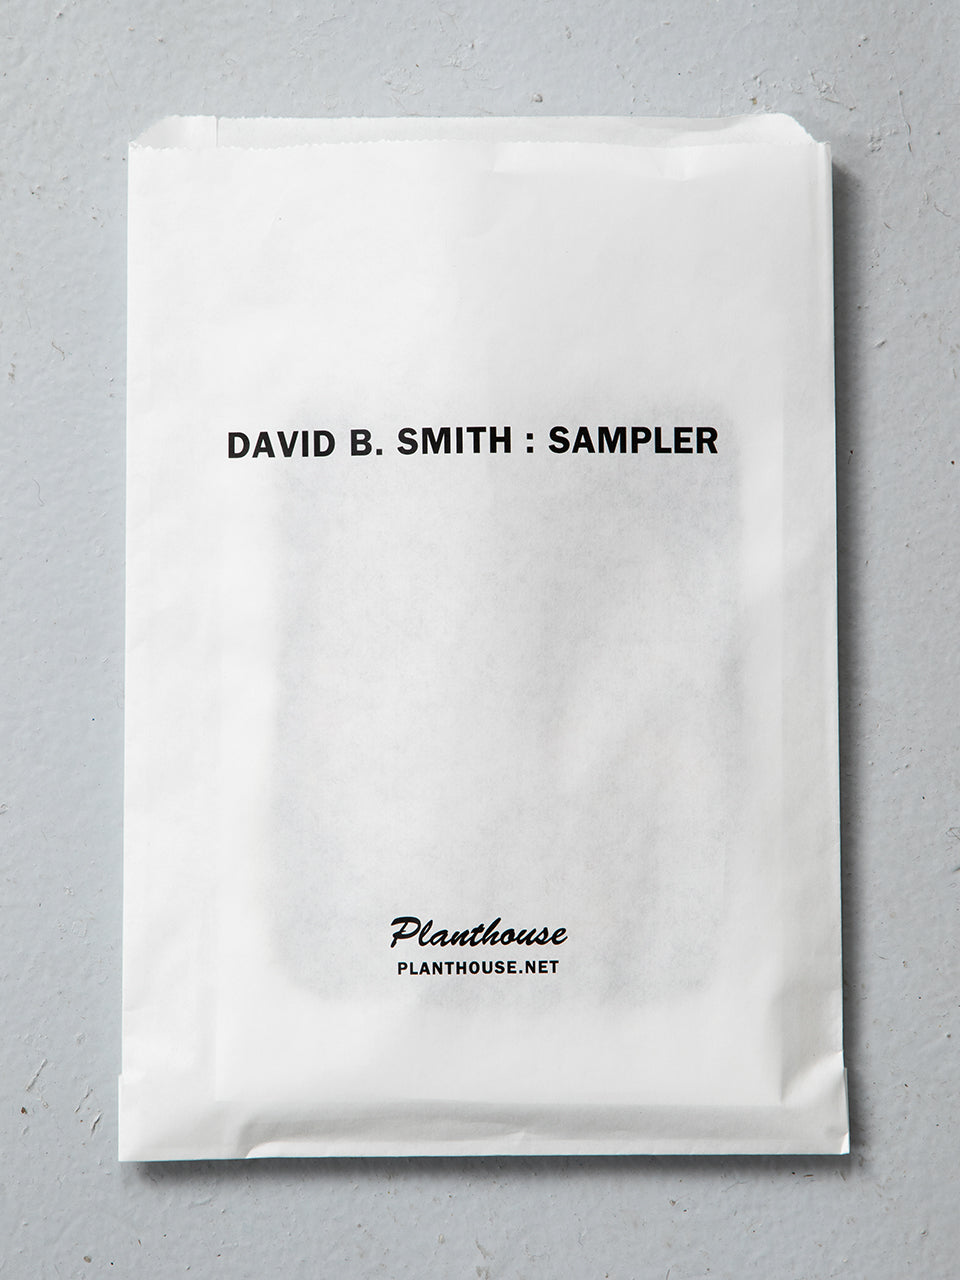 David B. Smith